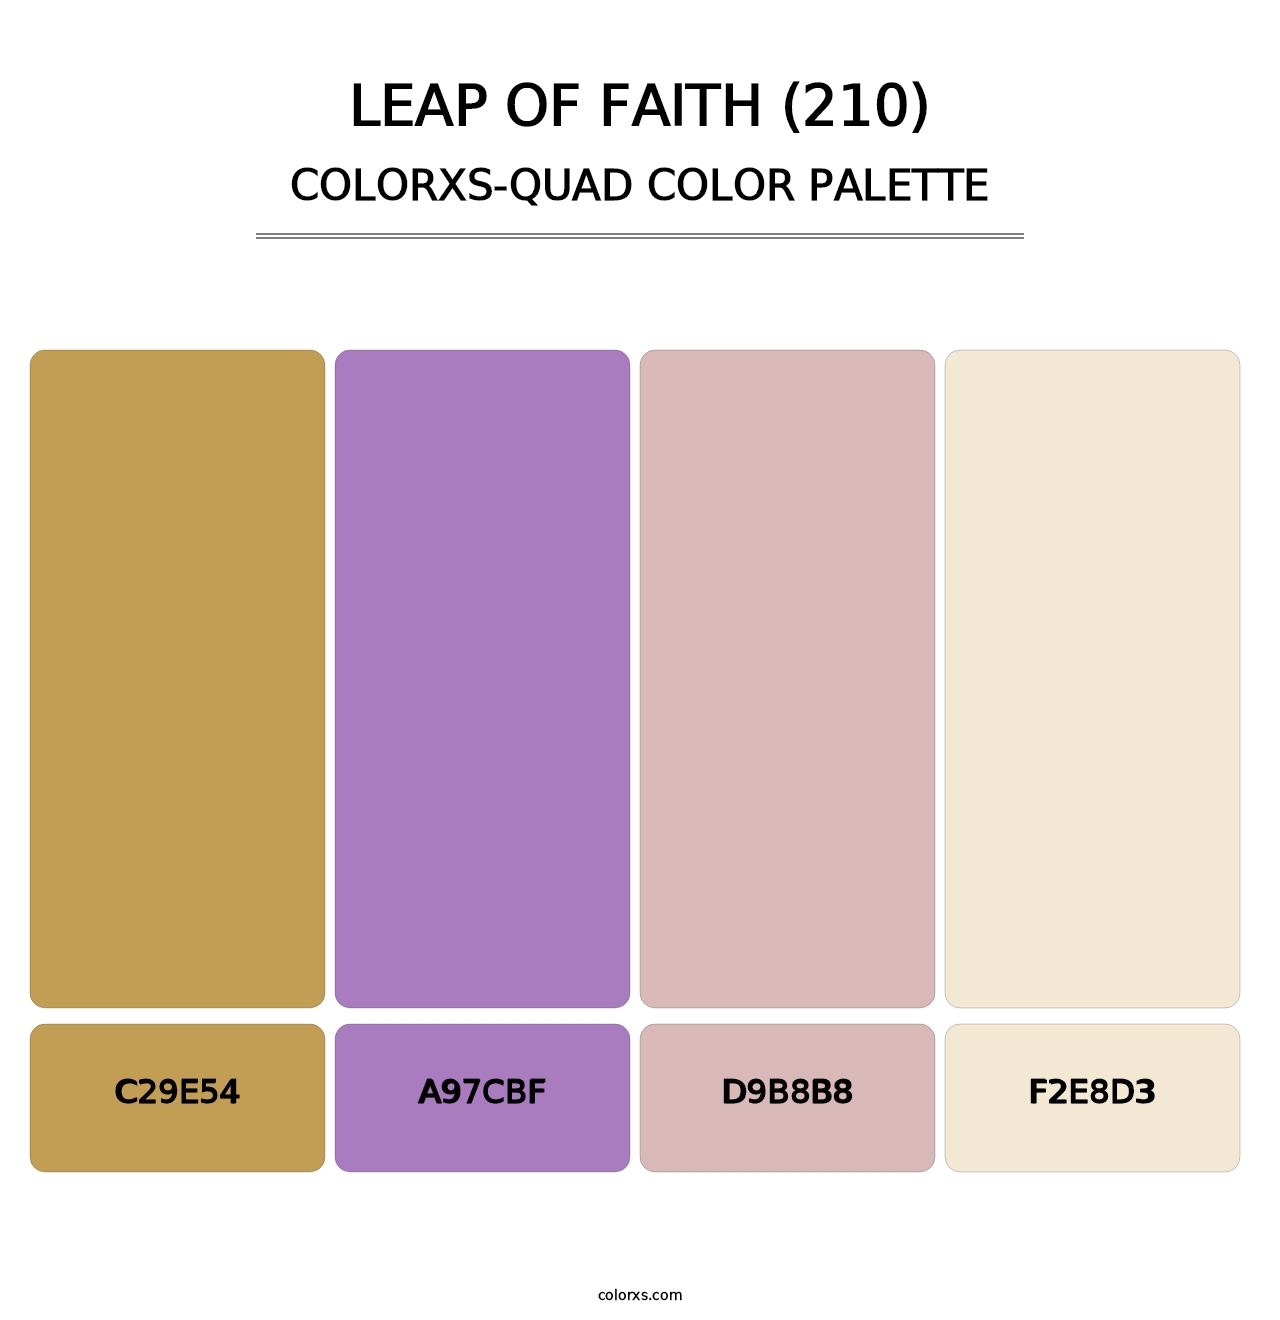 Leap of Faith (210) - Colorxs Quad Palette